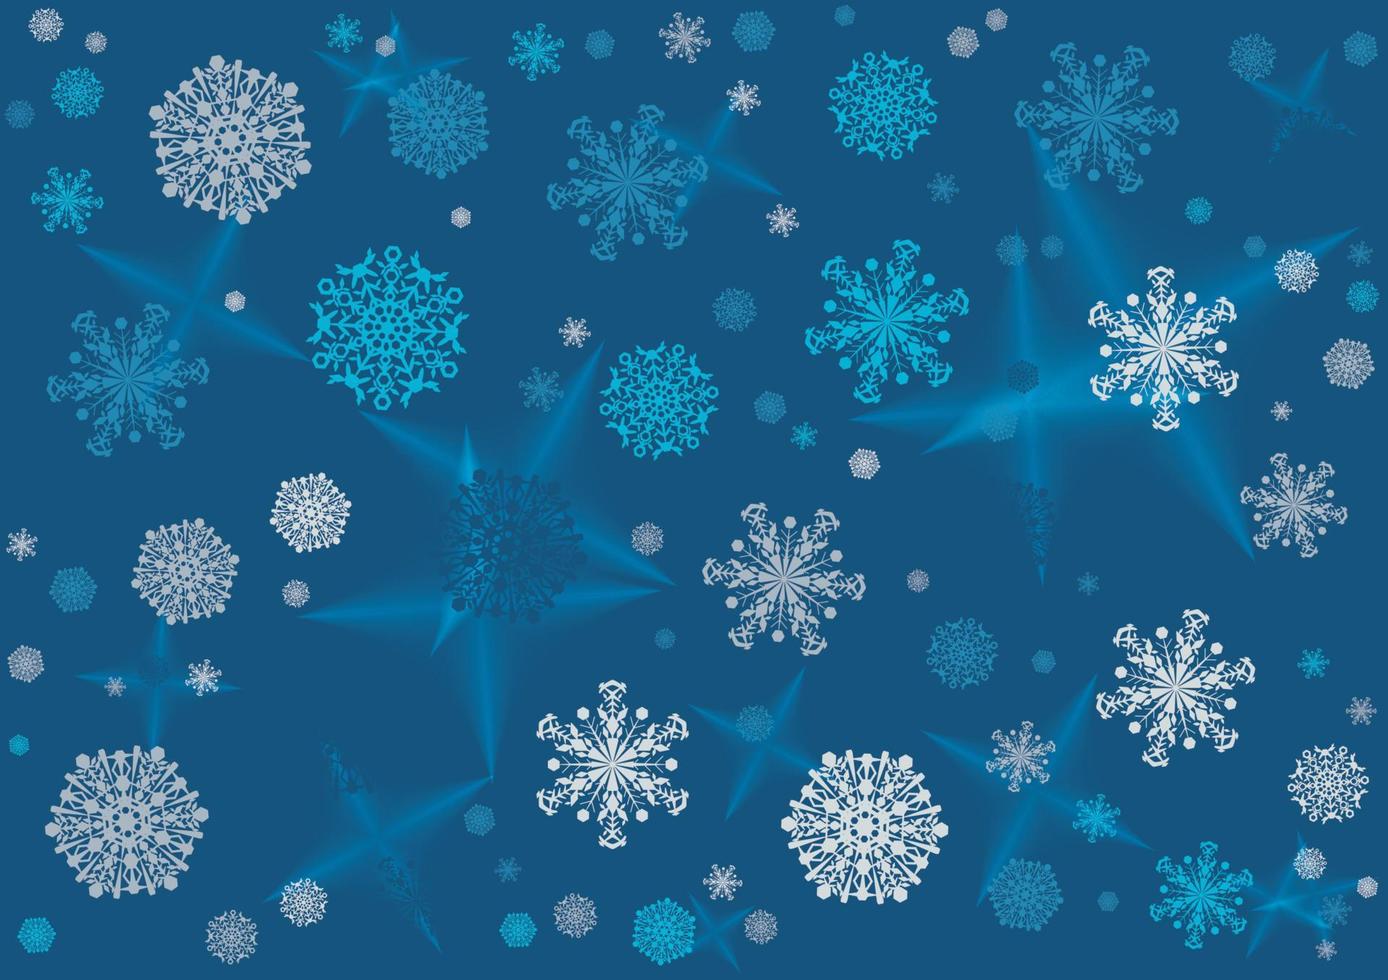 abstrakt bakgrund, snöflingor på en blå bakgrund. vektor illustration.